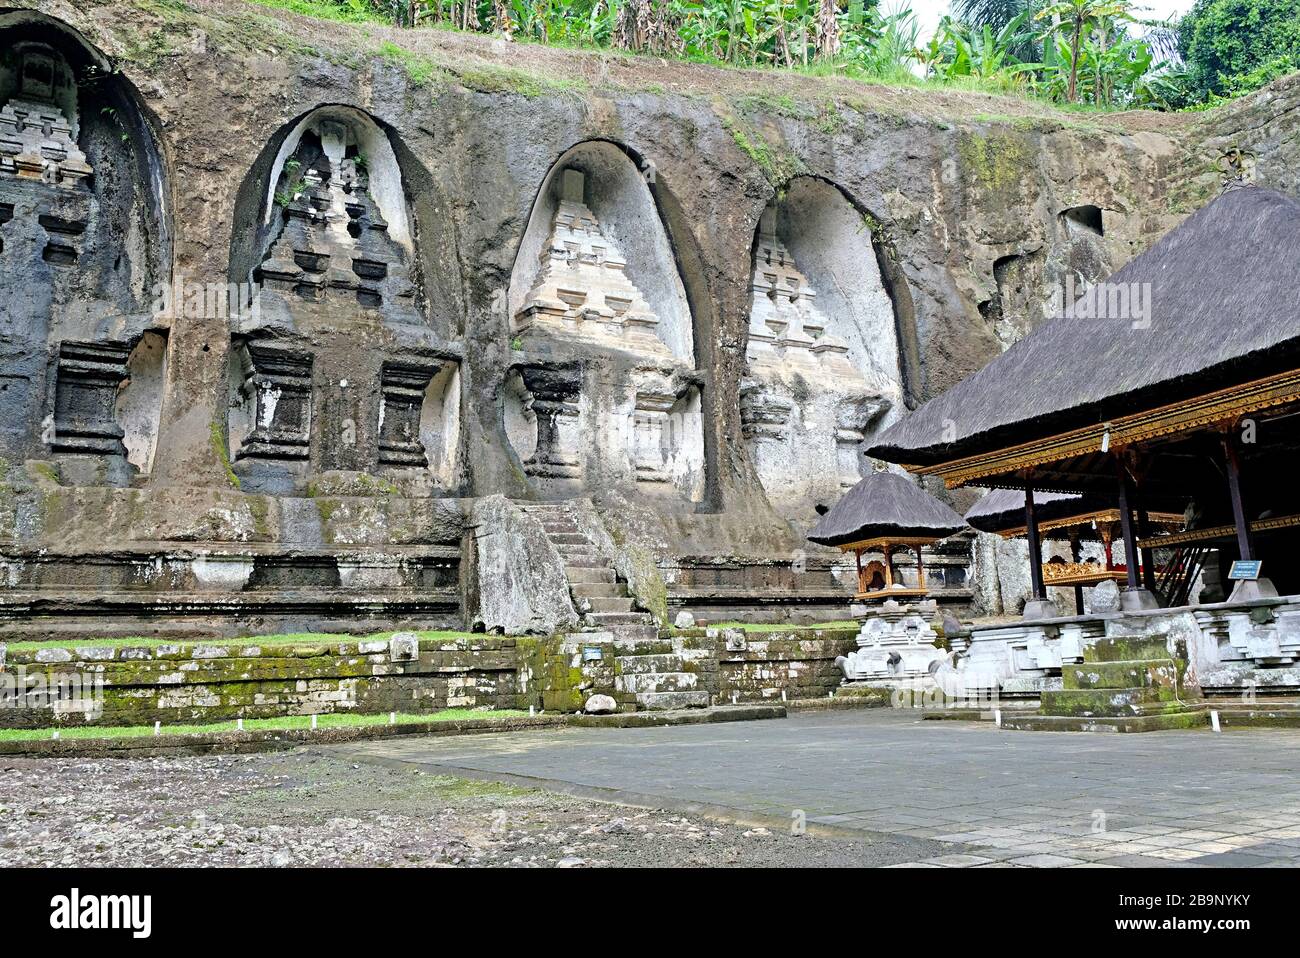 Der Gunung Kawi Temple Complex ist eine der einzigartigsten archäologischen Stätten Balis. Der Tempel besteht aus einer Sammlung alter Schreinreliefe, die ich geschnitzt habe Stockfoto